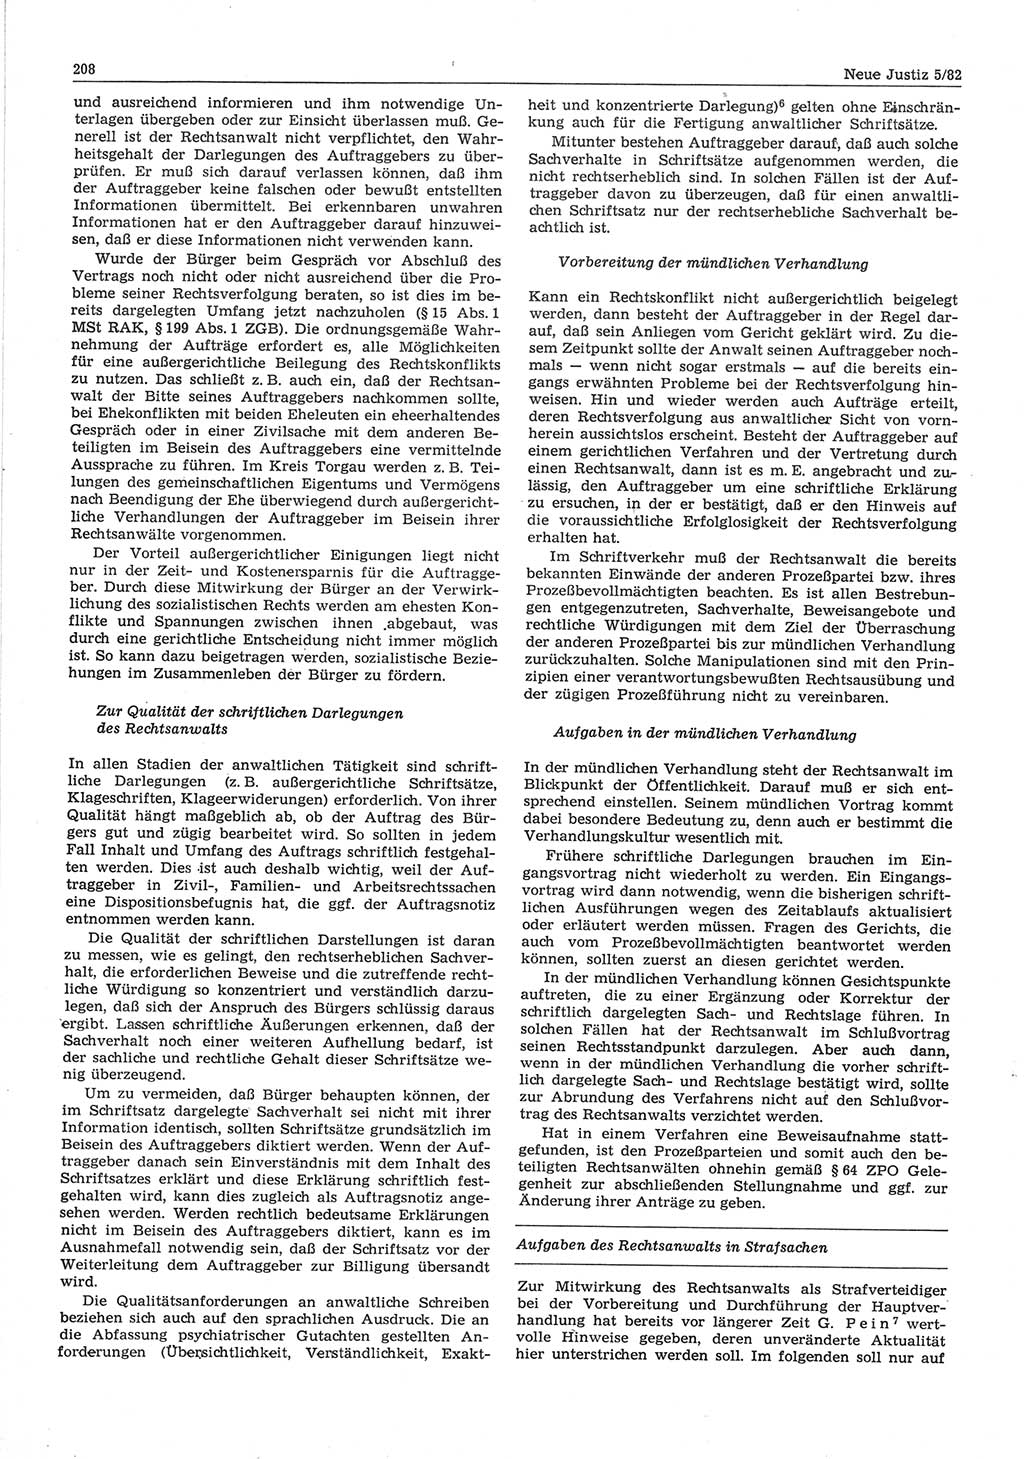 Neue Justiz (NJ), Zeitschrift für sozialistisches Recht und Gesetzlichkeit [Deutsche Demokratische Republik (DDR)], 36. Jahrgang 1982, Seite 208 (NJ DDR 1982, S. 208)